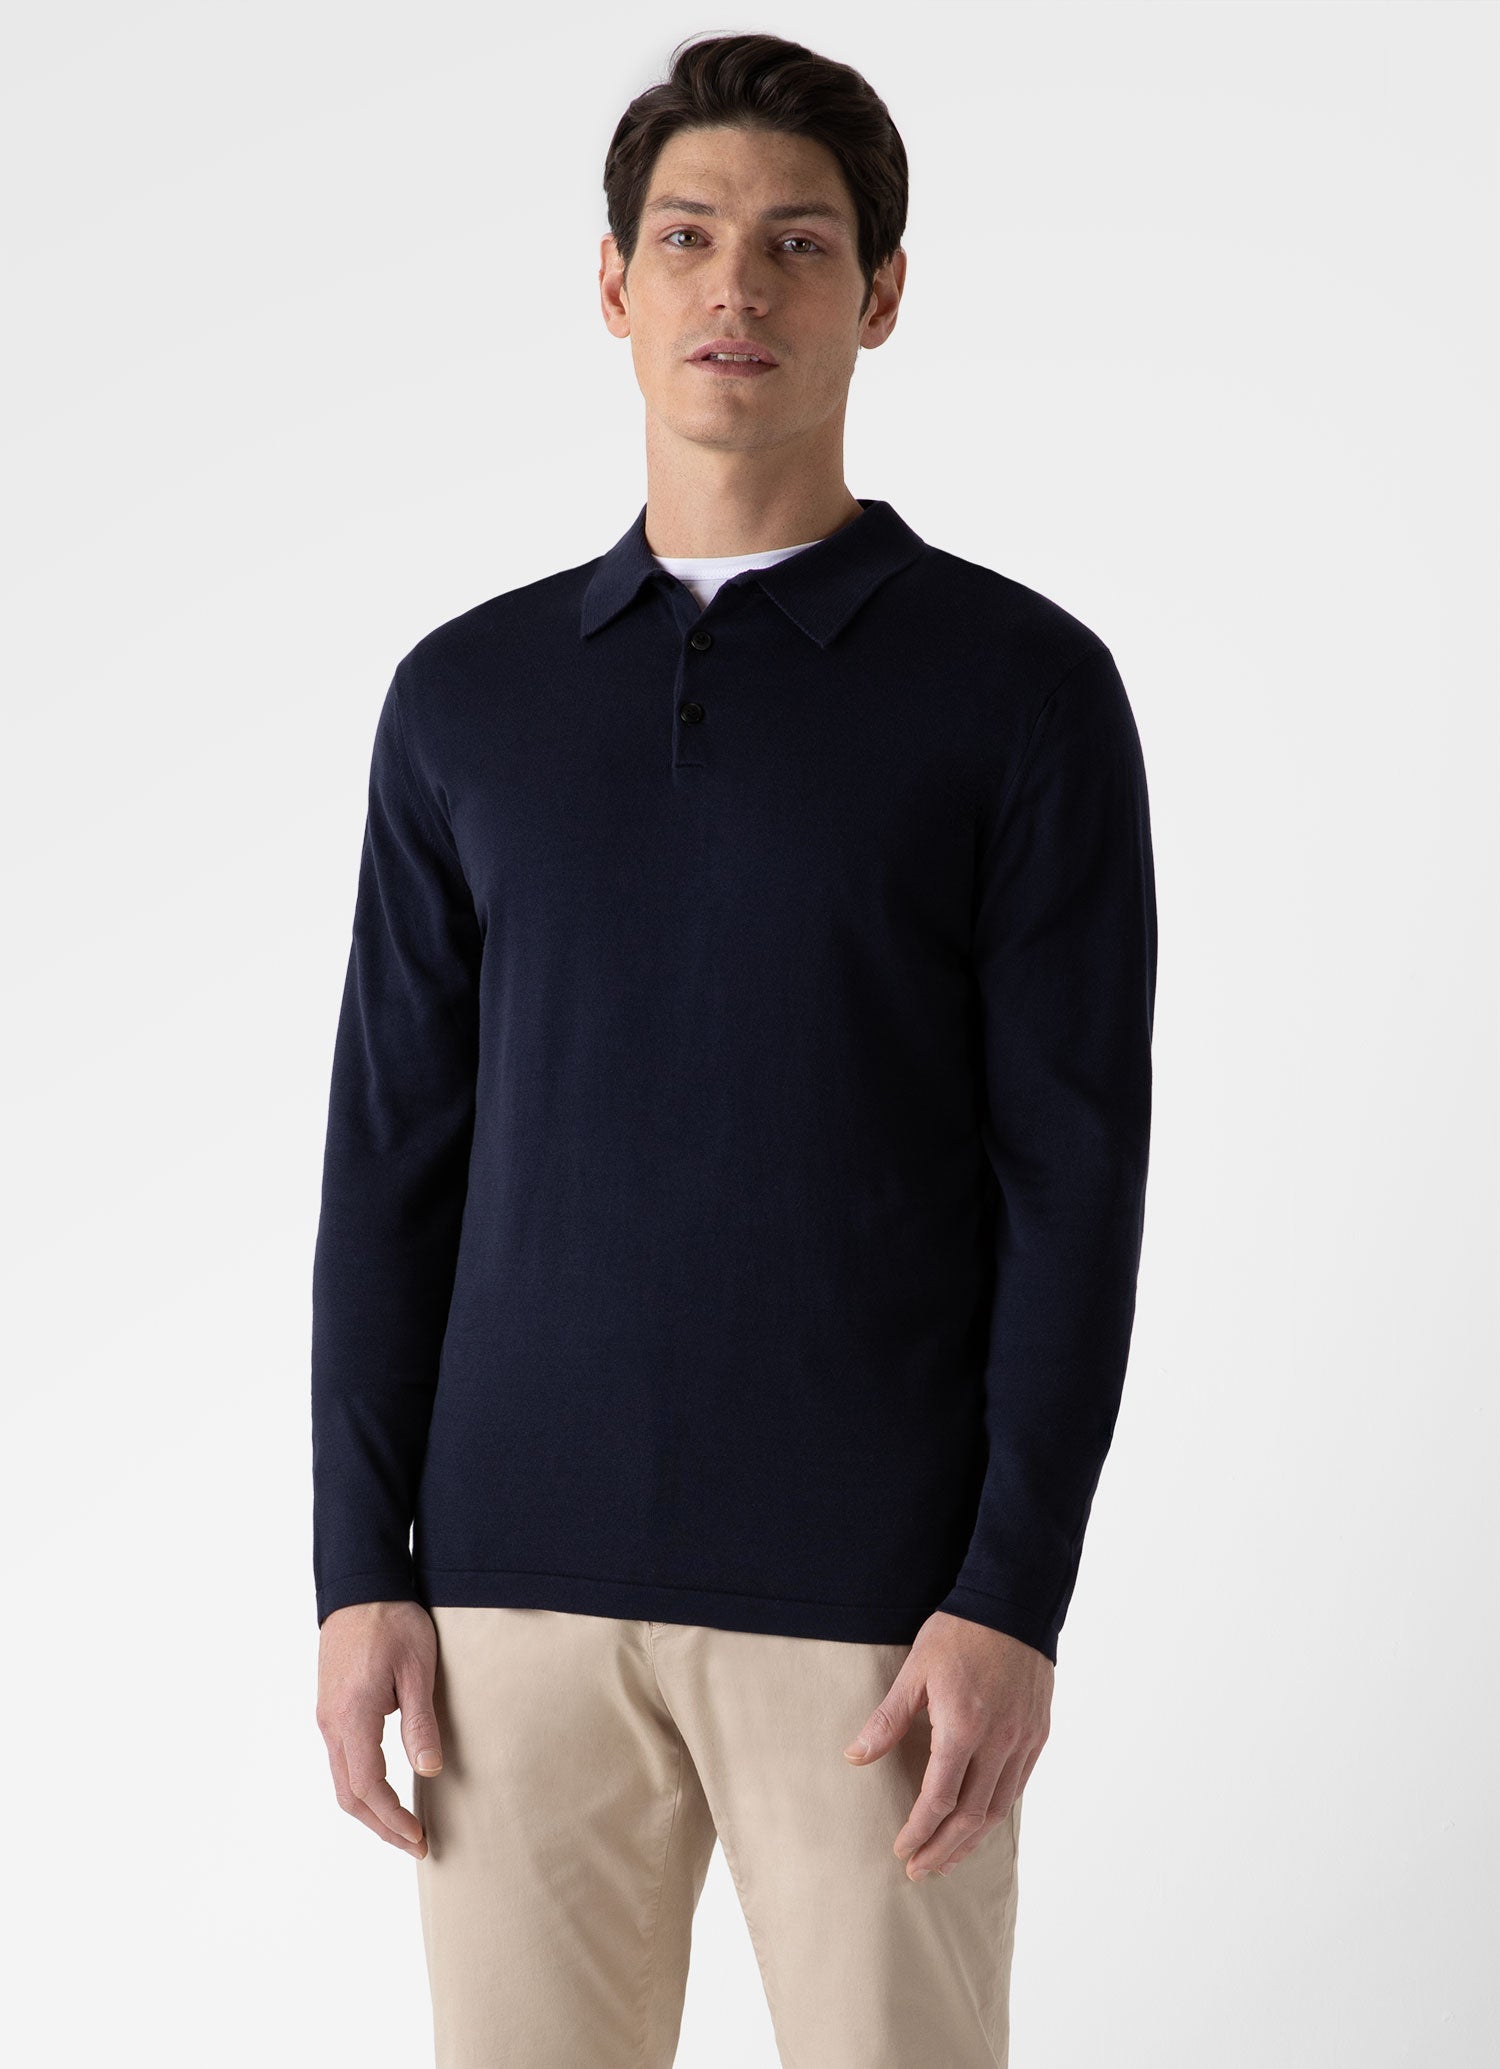 Men's Sea Island Cotton Long Sleeve Polo Shirt in Light Navy